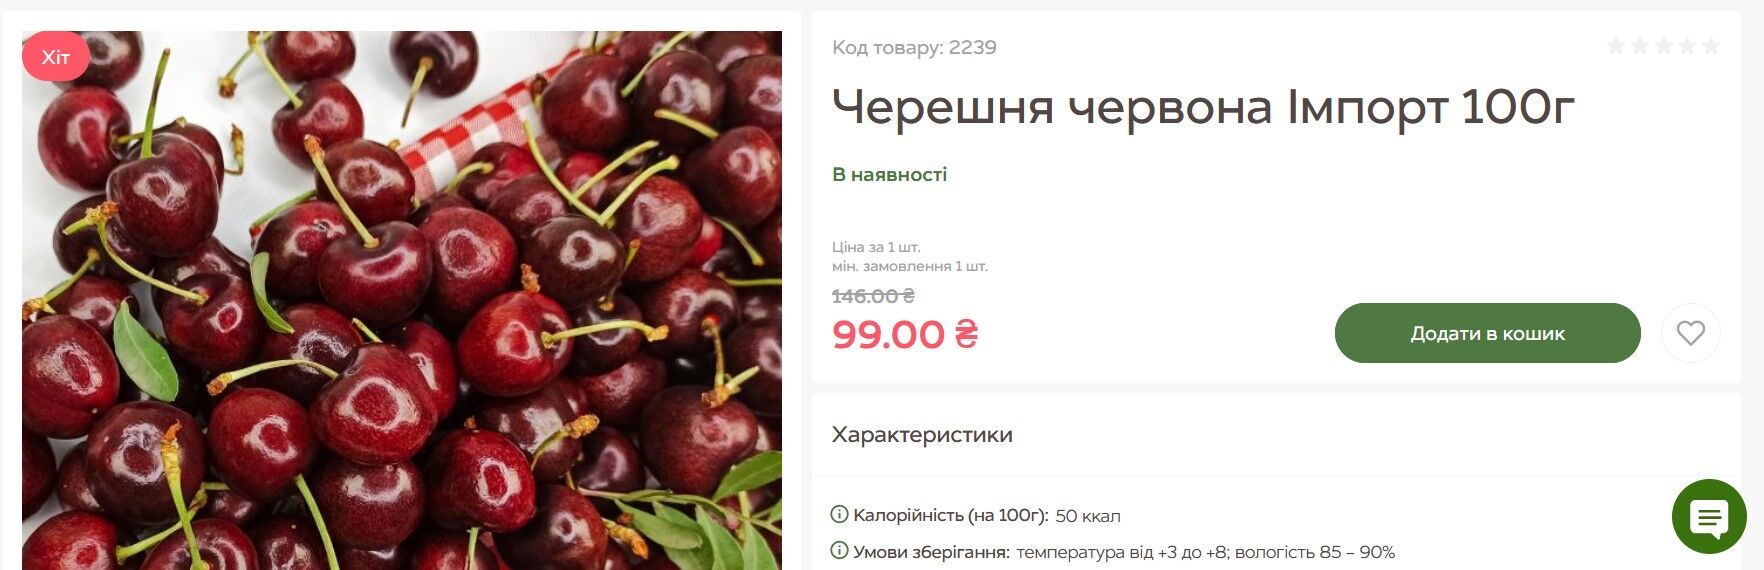 У продуктовому інтернет-магазині Freshmart акційна ціна на черешню – 990 грн/кг